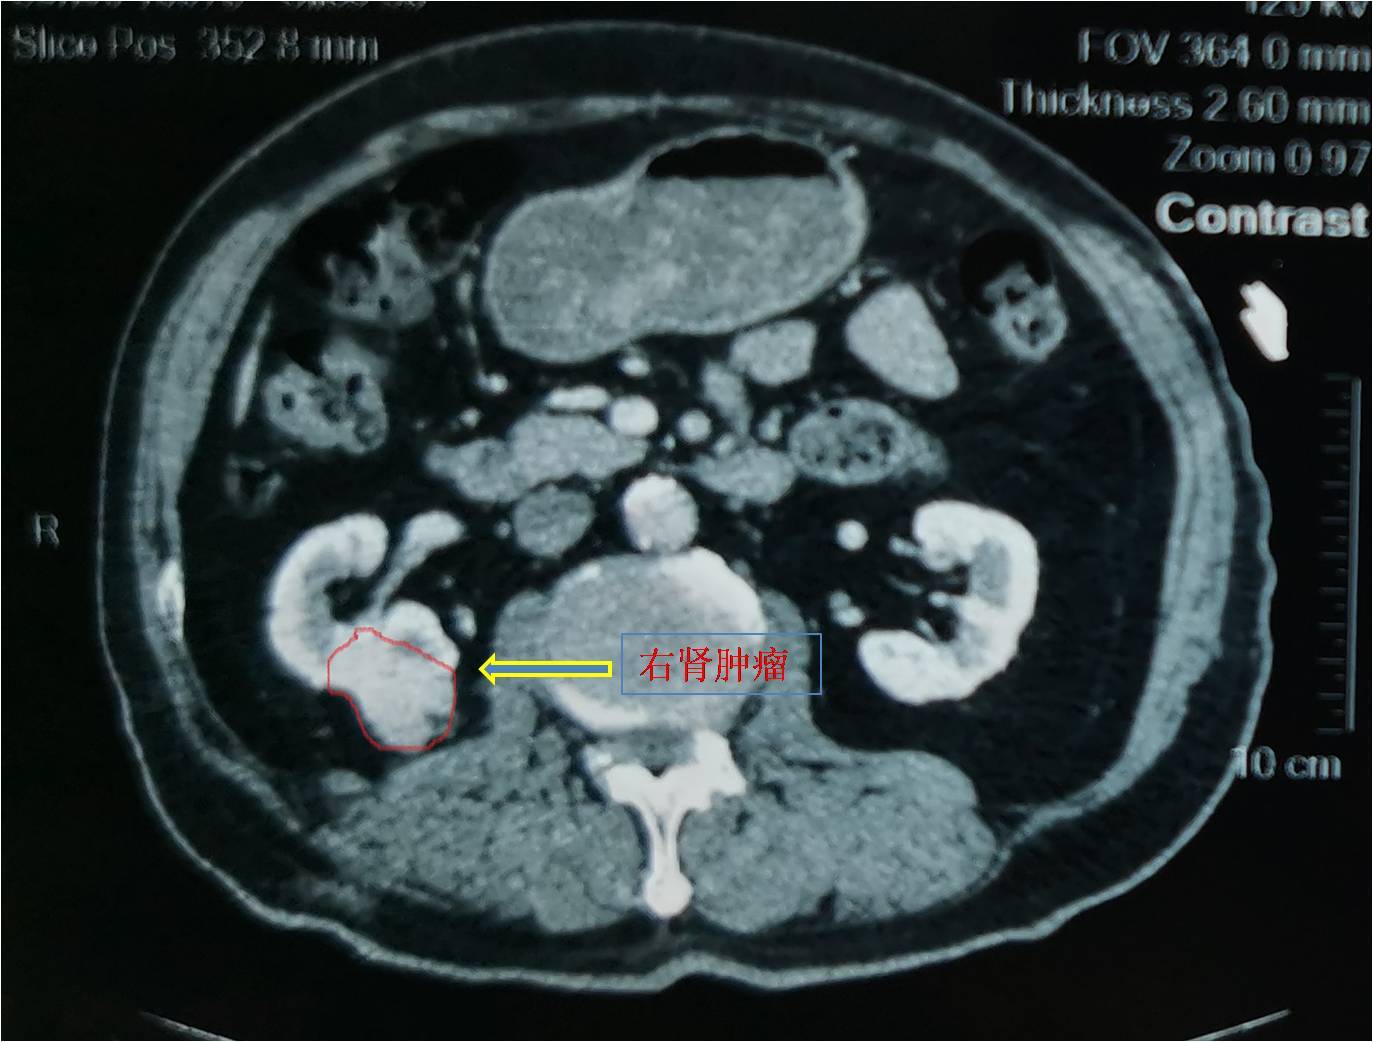 腹部增强ct证实:右侧肾脏术后改变,右肾下极直径约2cm肿物,考虑肾癌